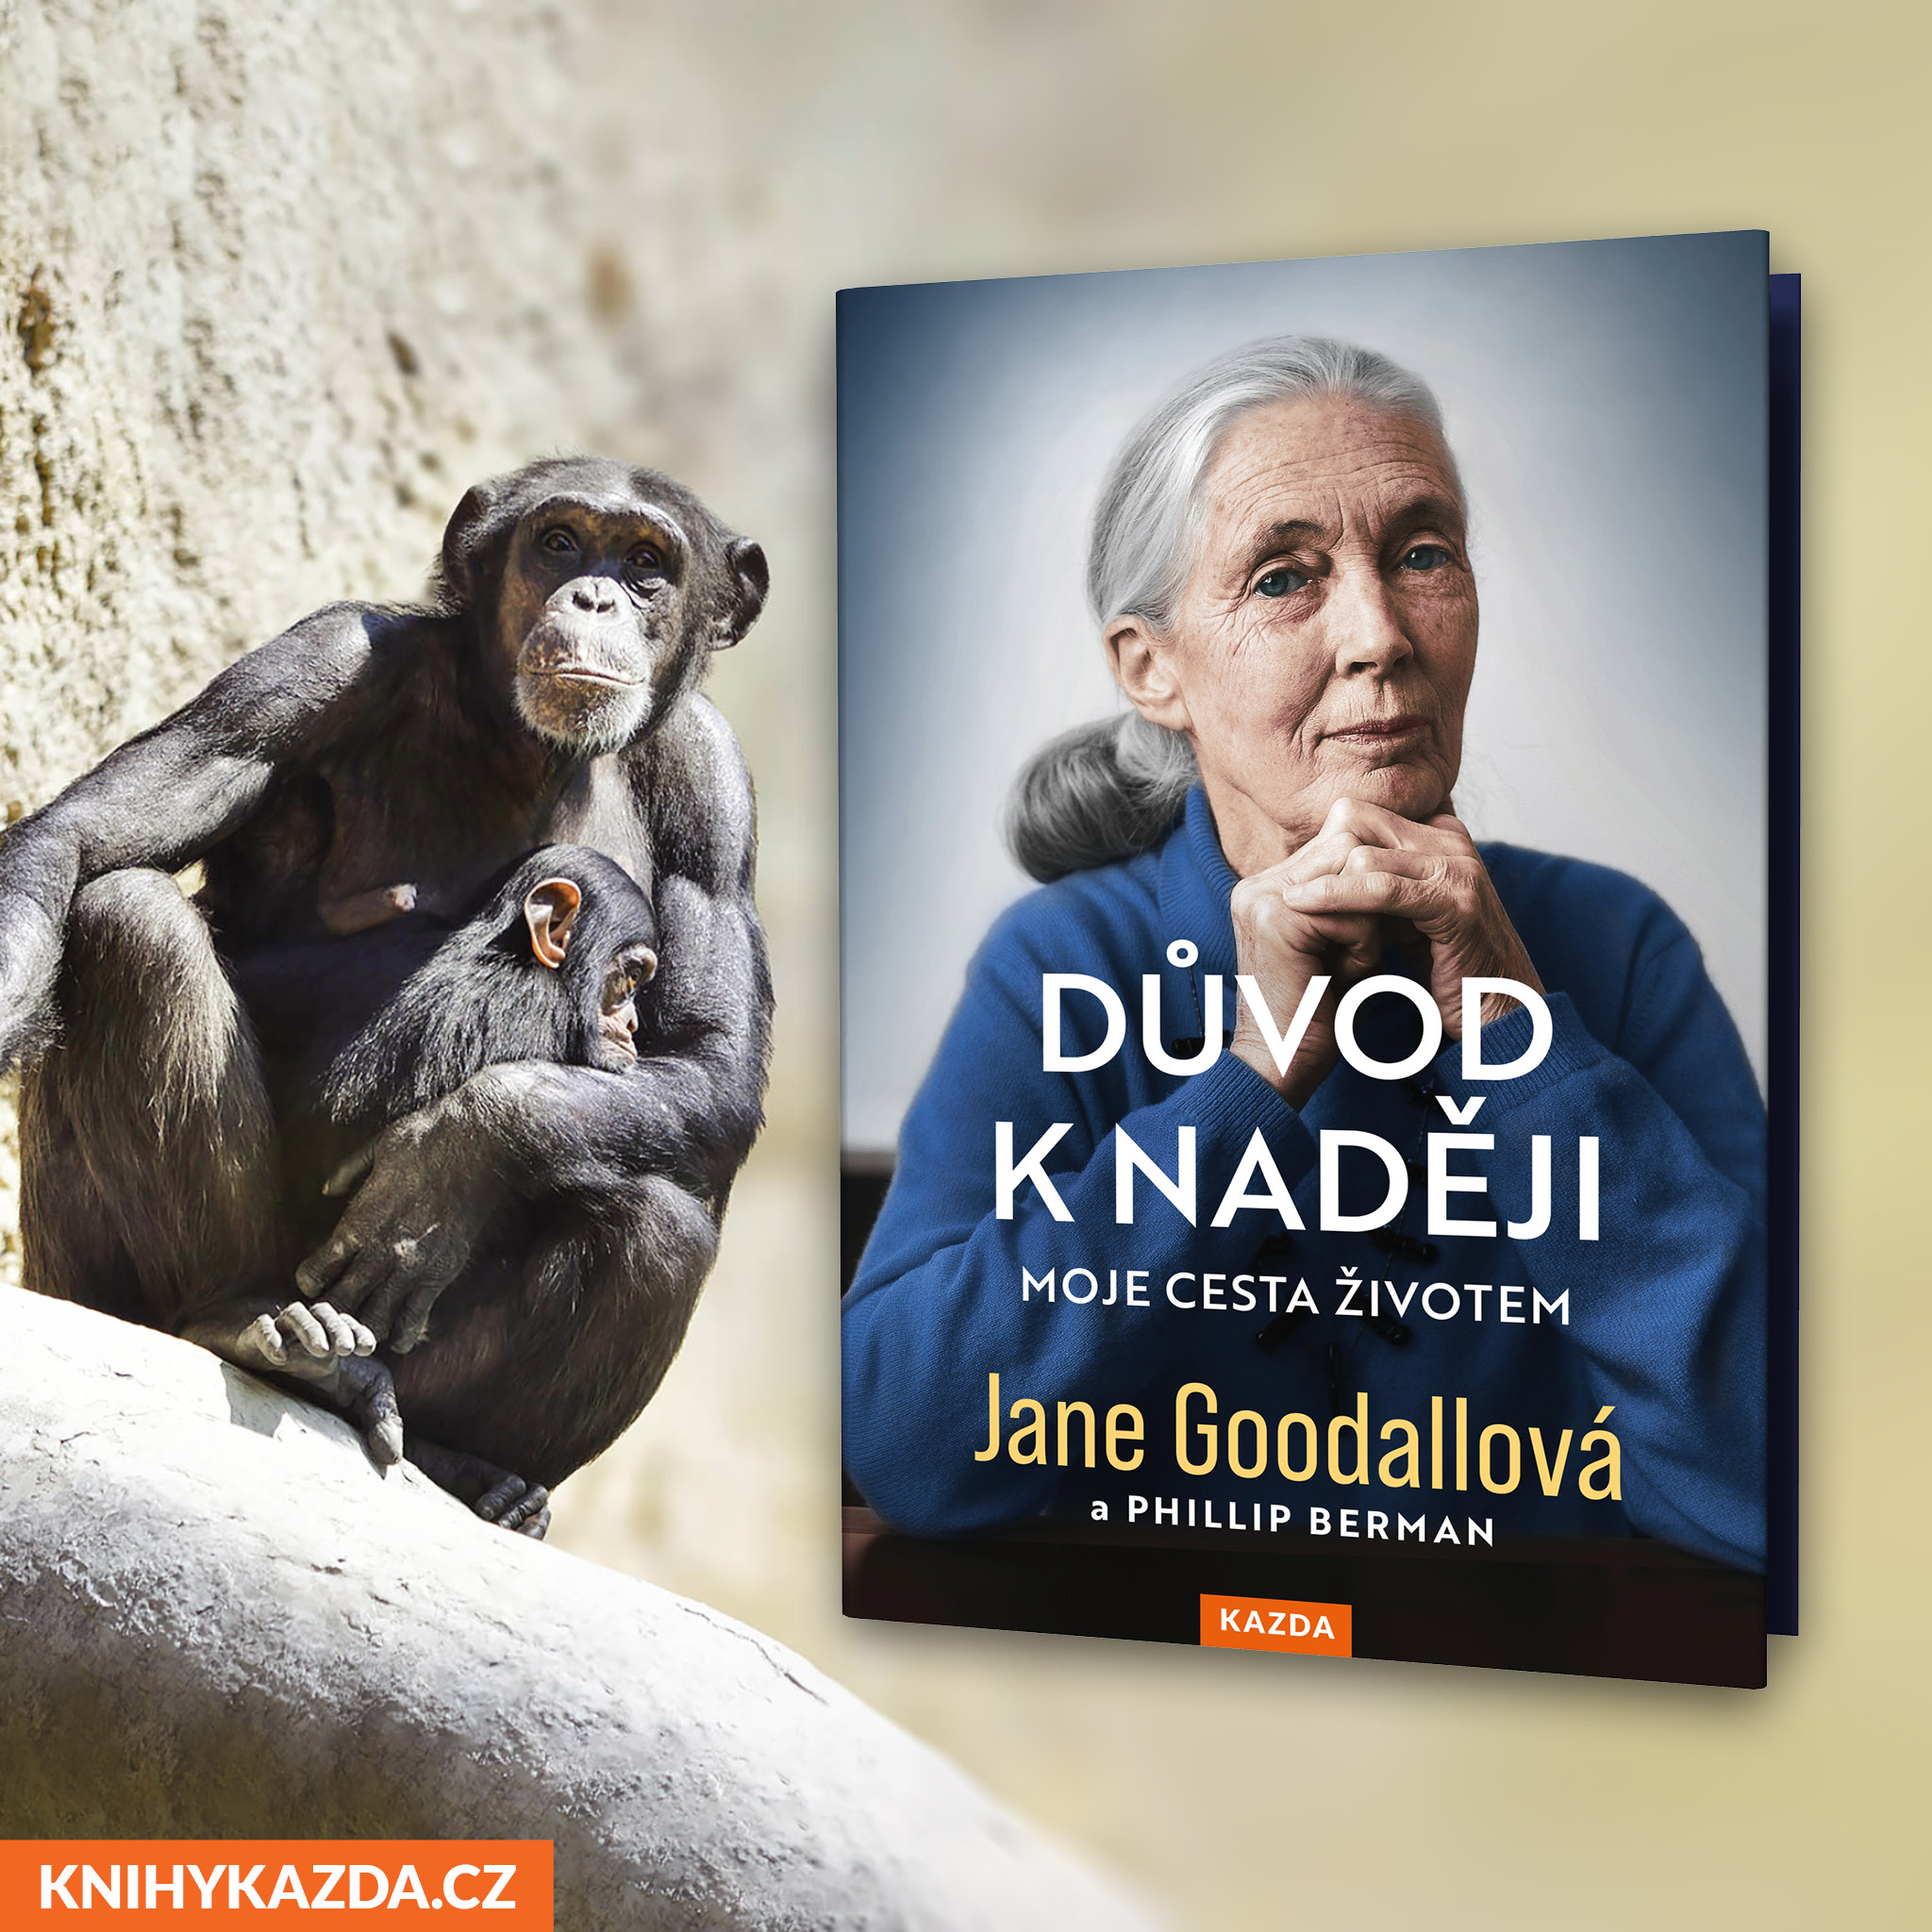 Nacházíme se v době šestého masového vymírání, říká legendární primatoložka Jane Goodallová